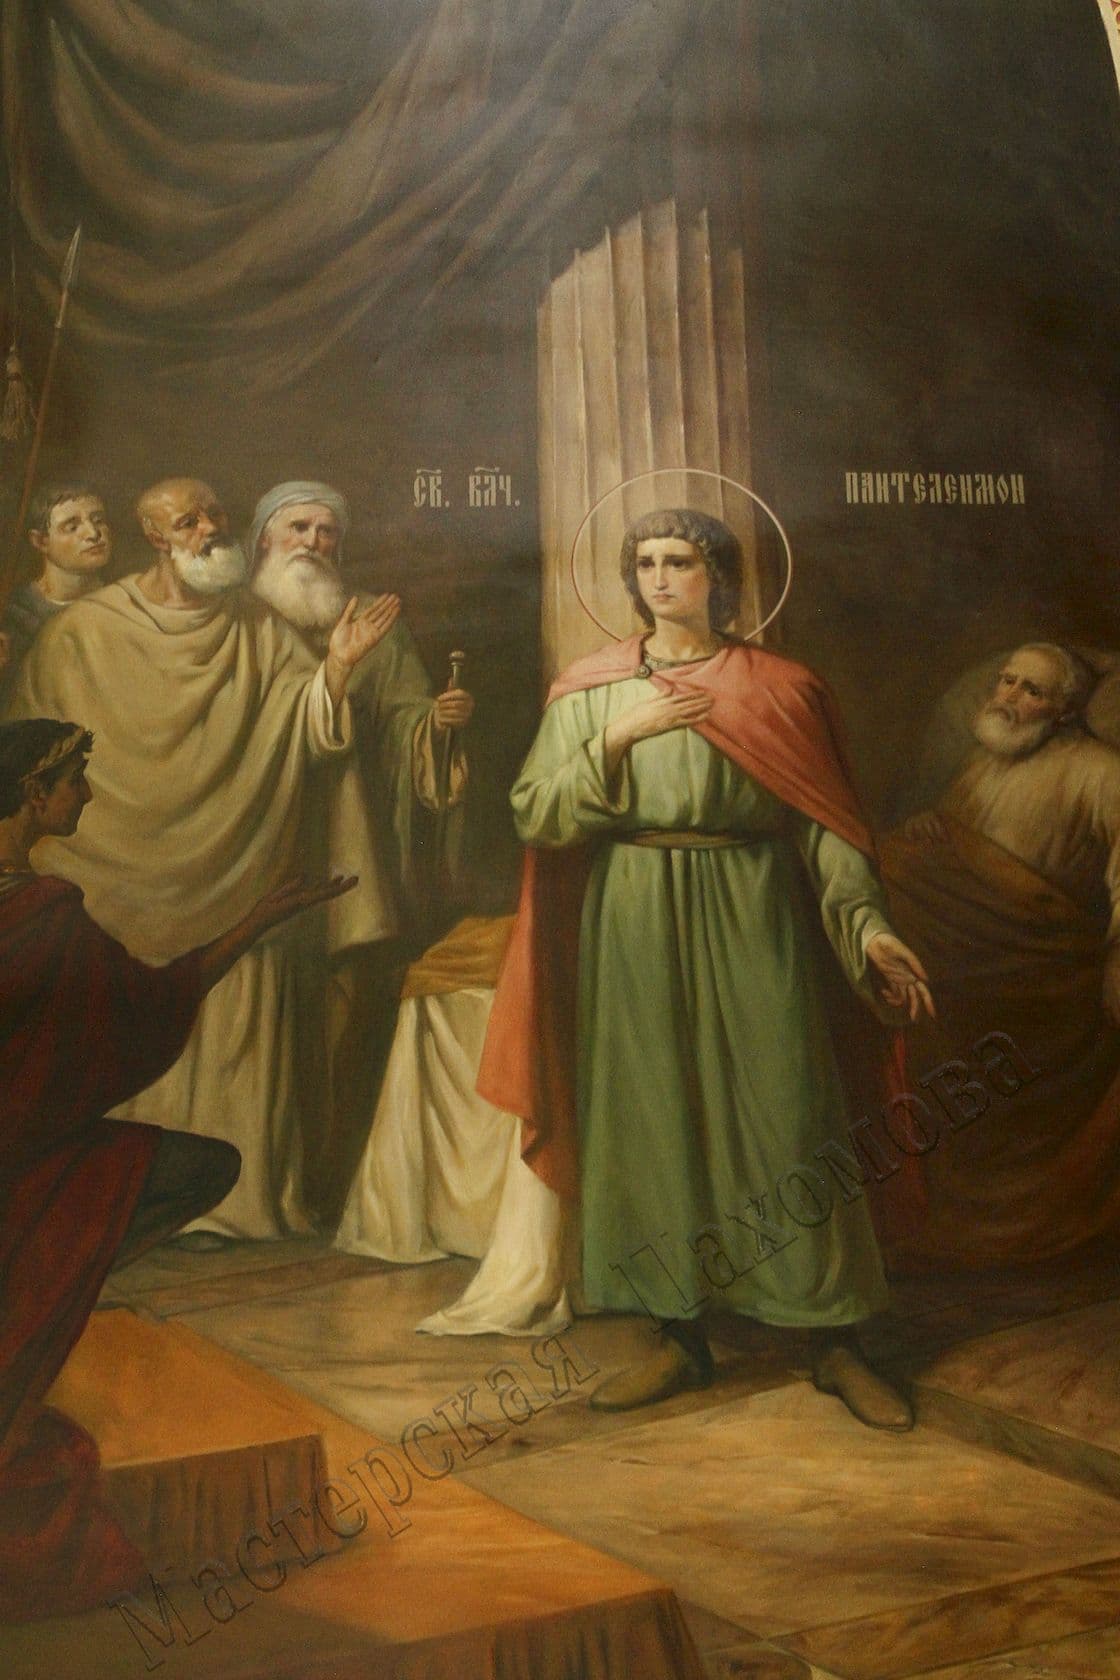 Беседа Святого Пантелеймона с императором Максимианом. Авторская роспись храма